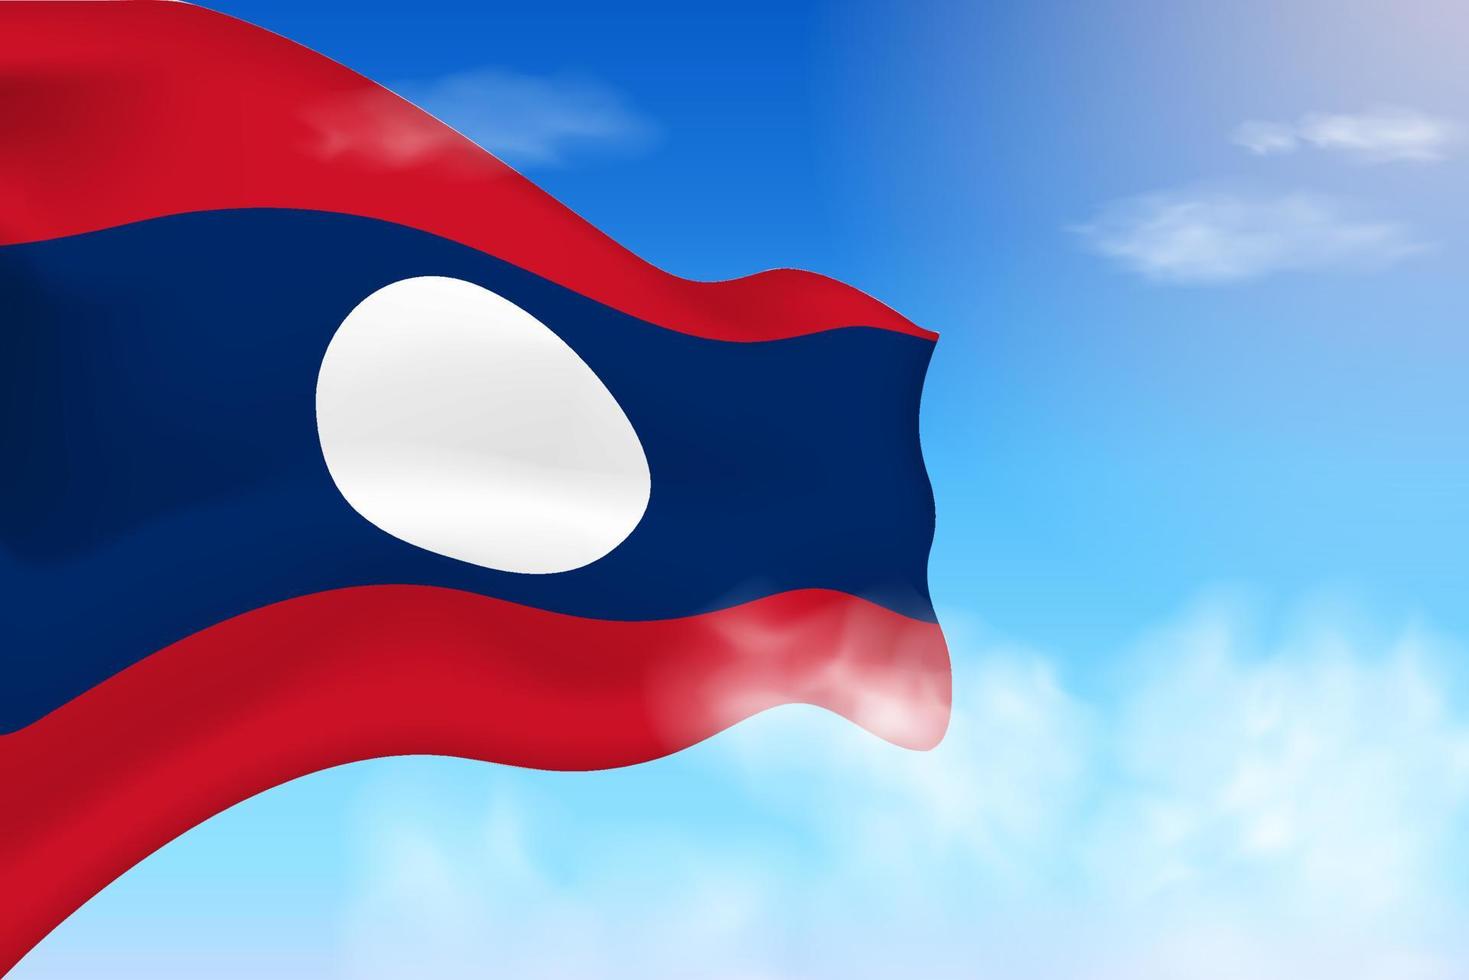 bandiera del laos tra le nuvole. bandiera vettoriale che sventola nel cielo. illustrazione realistica della bandiera della giornata nazionale. vettore di cielo blu.